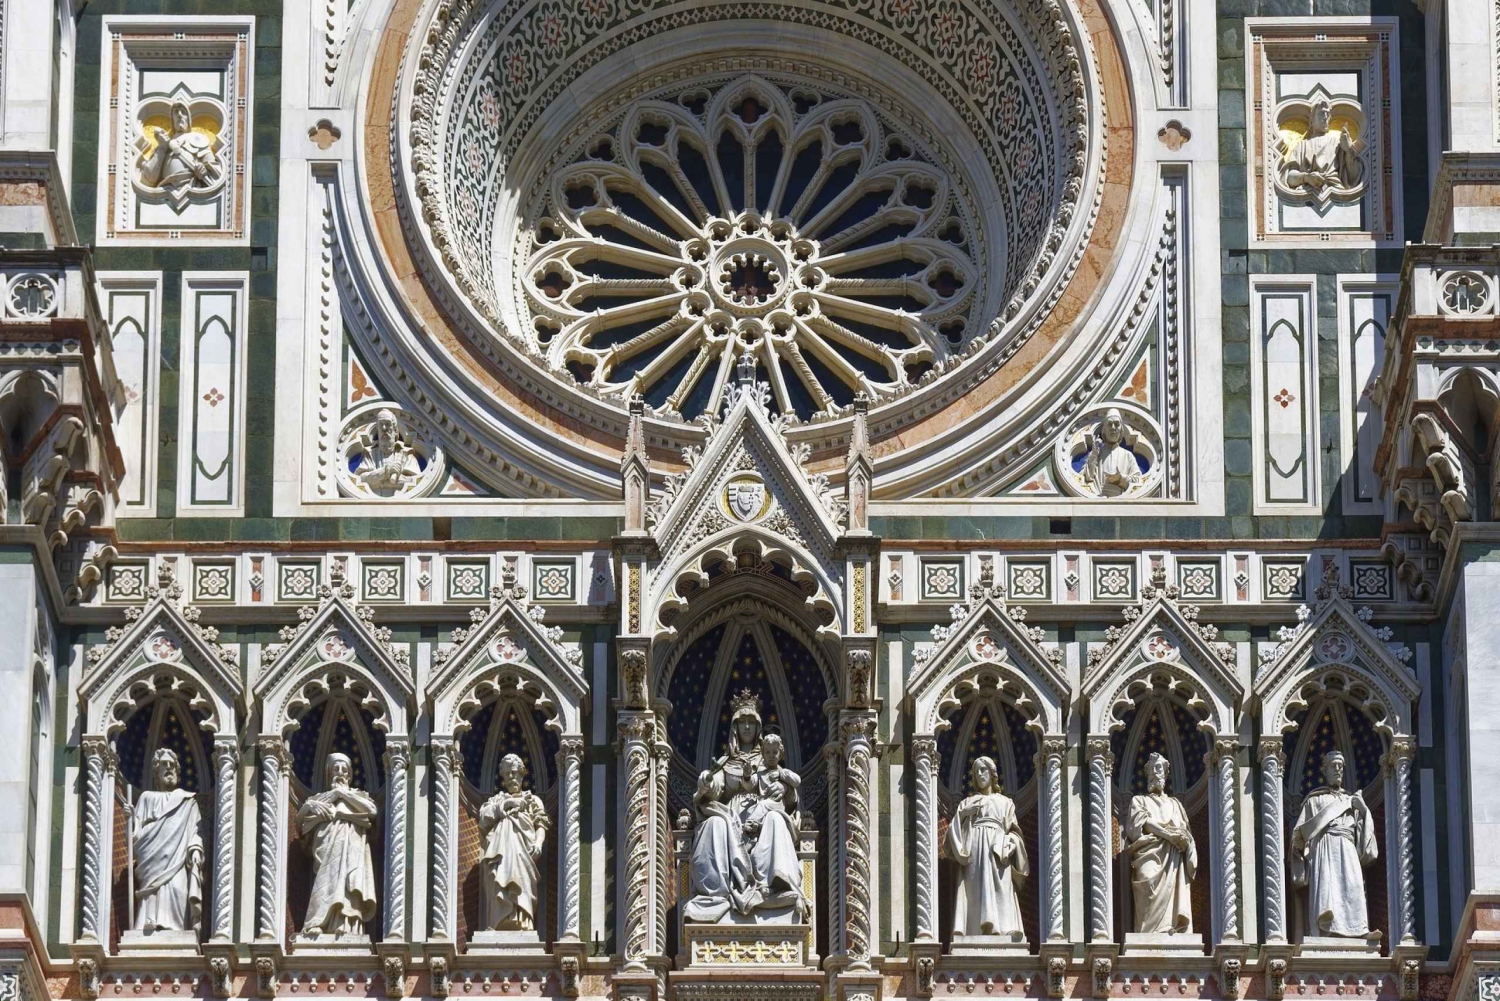 Florença: Visita ao Complexo do Duomo com ingresso para a Torre Giotto